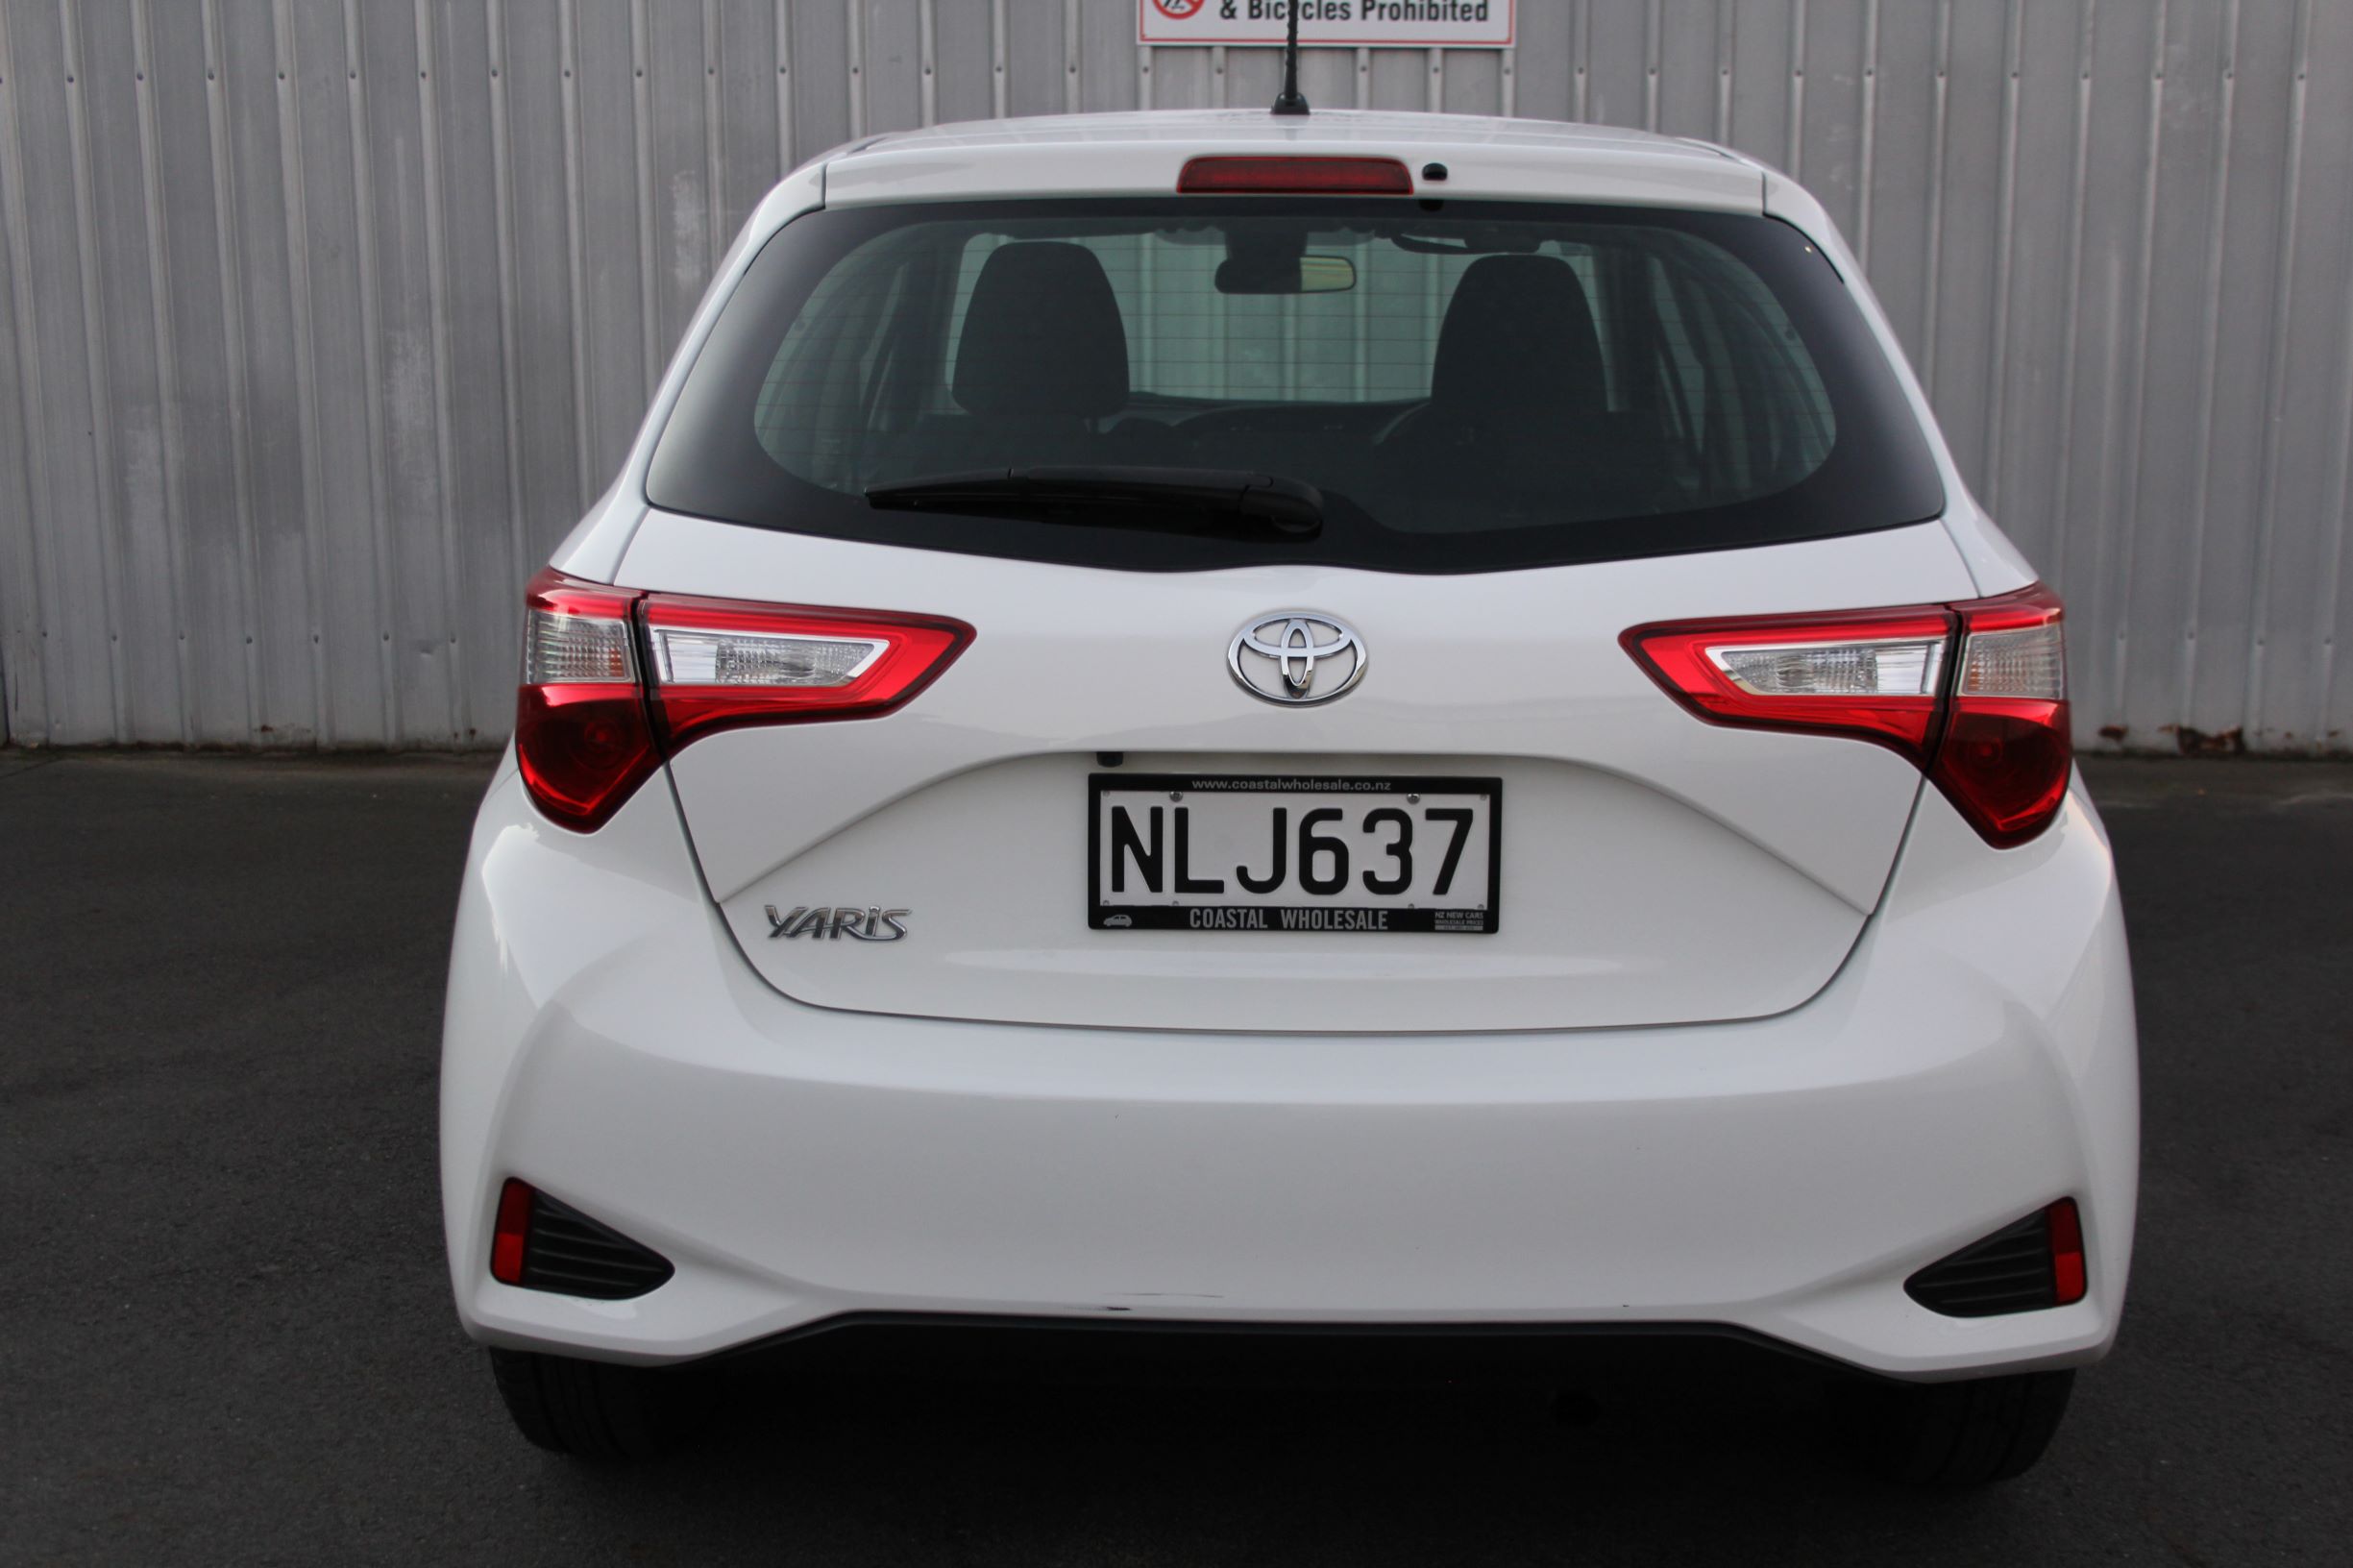 Toyota YARIS 5 DOOR HATCH 2018 for sale in Auckland